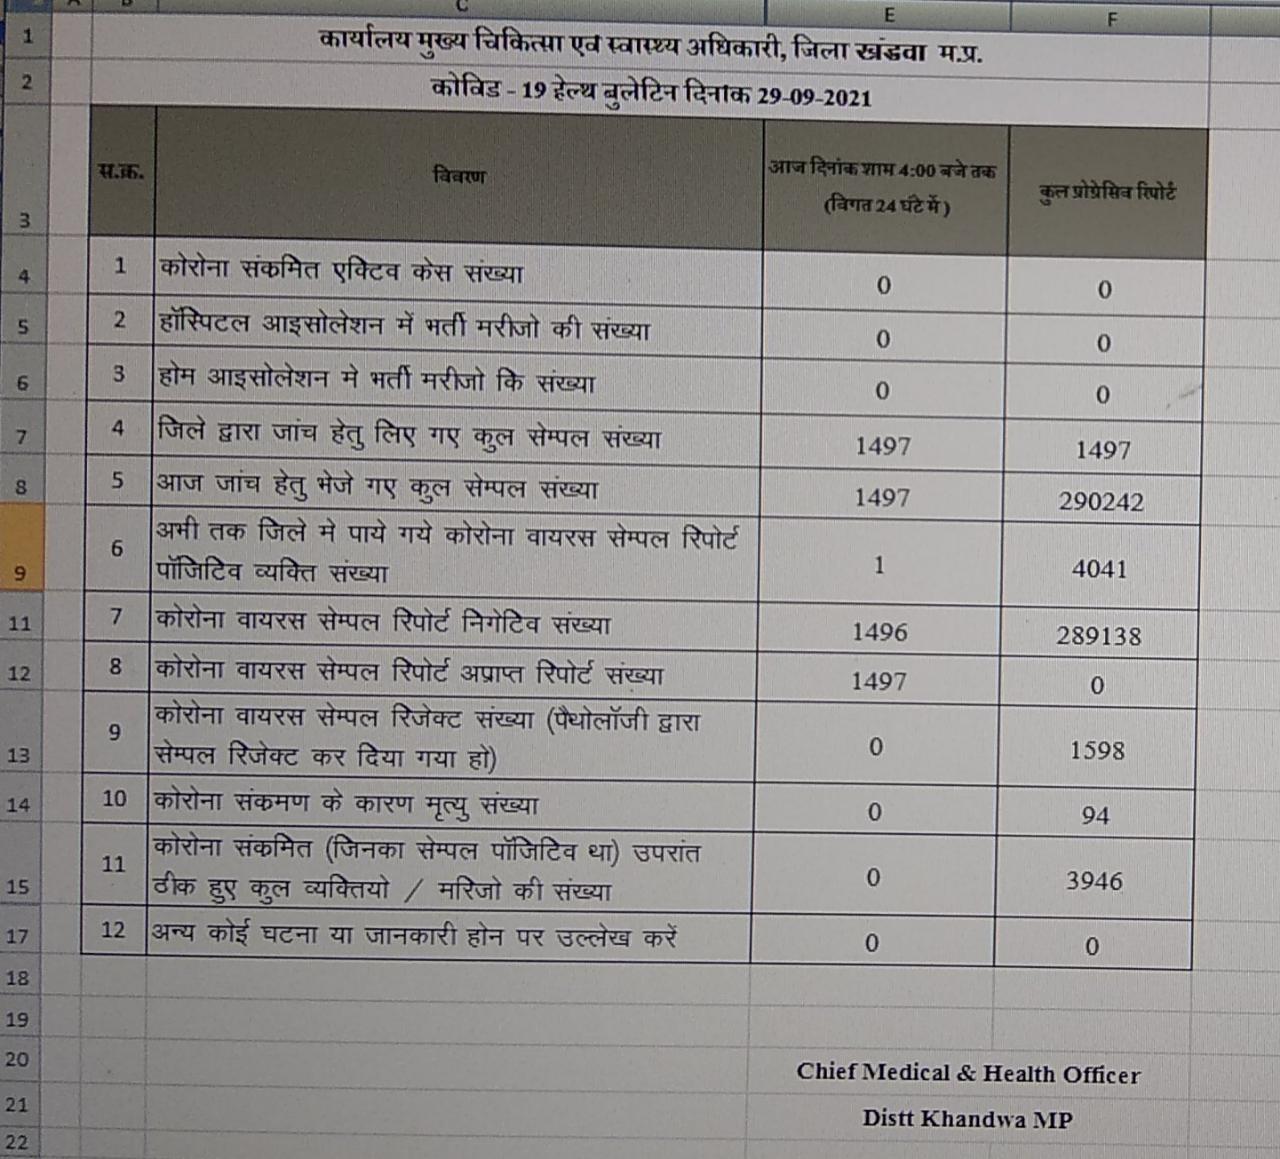 Corona infection figures in Khandwa